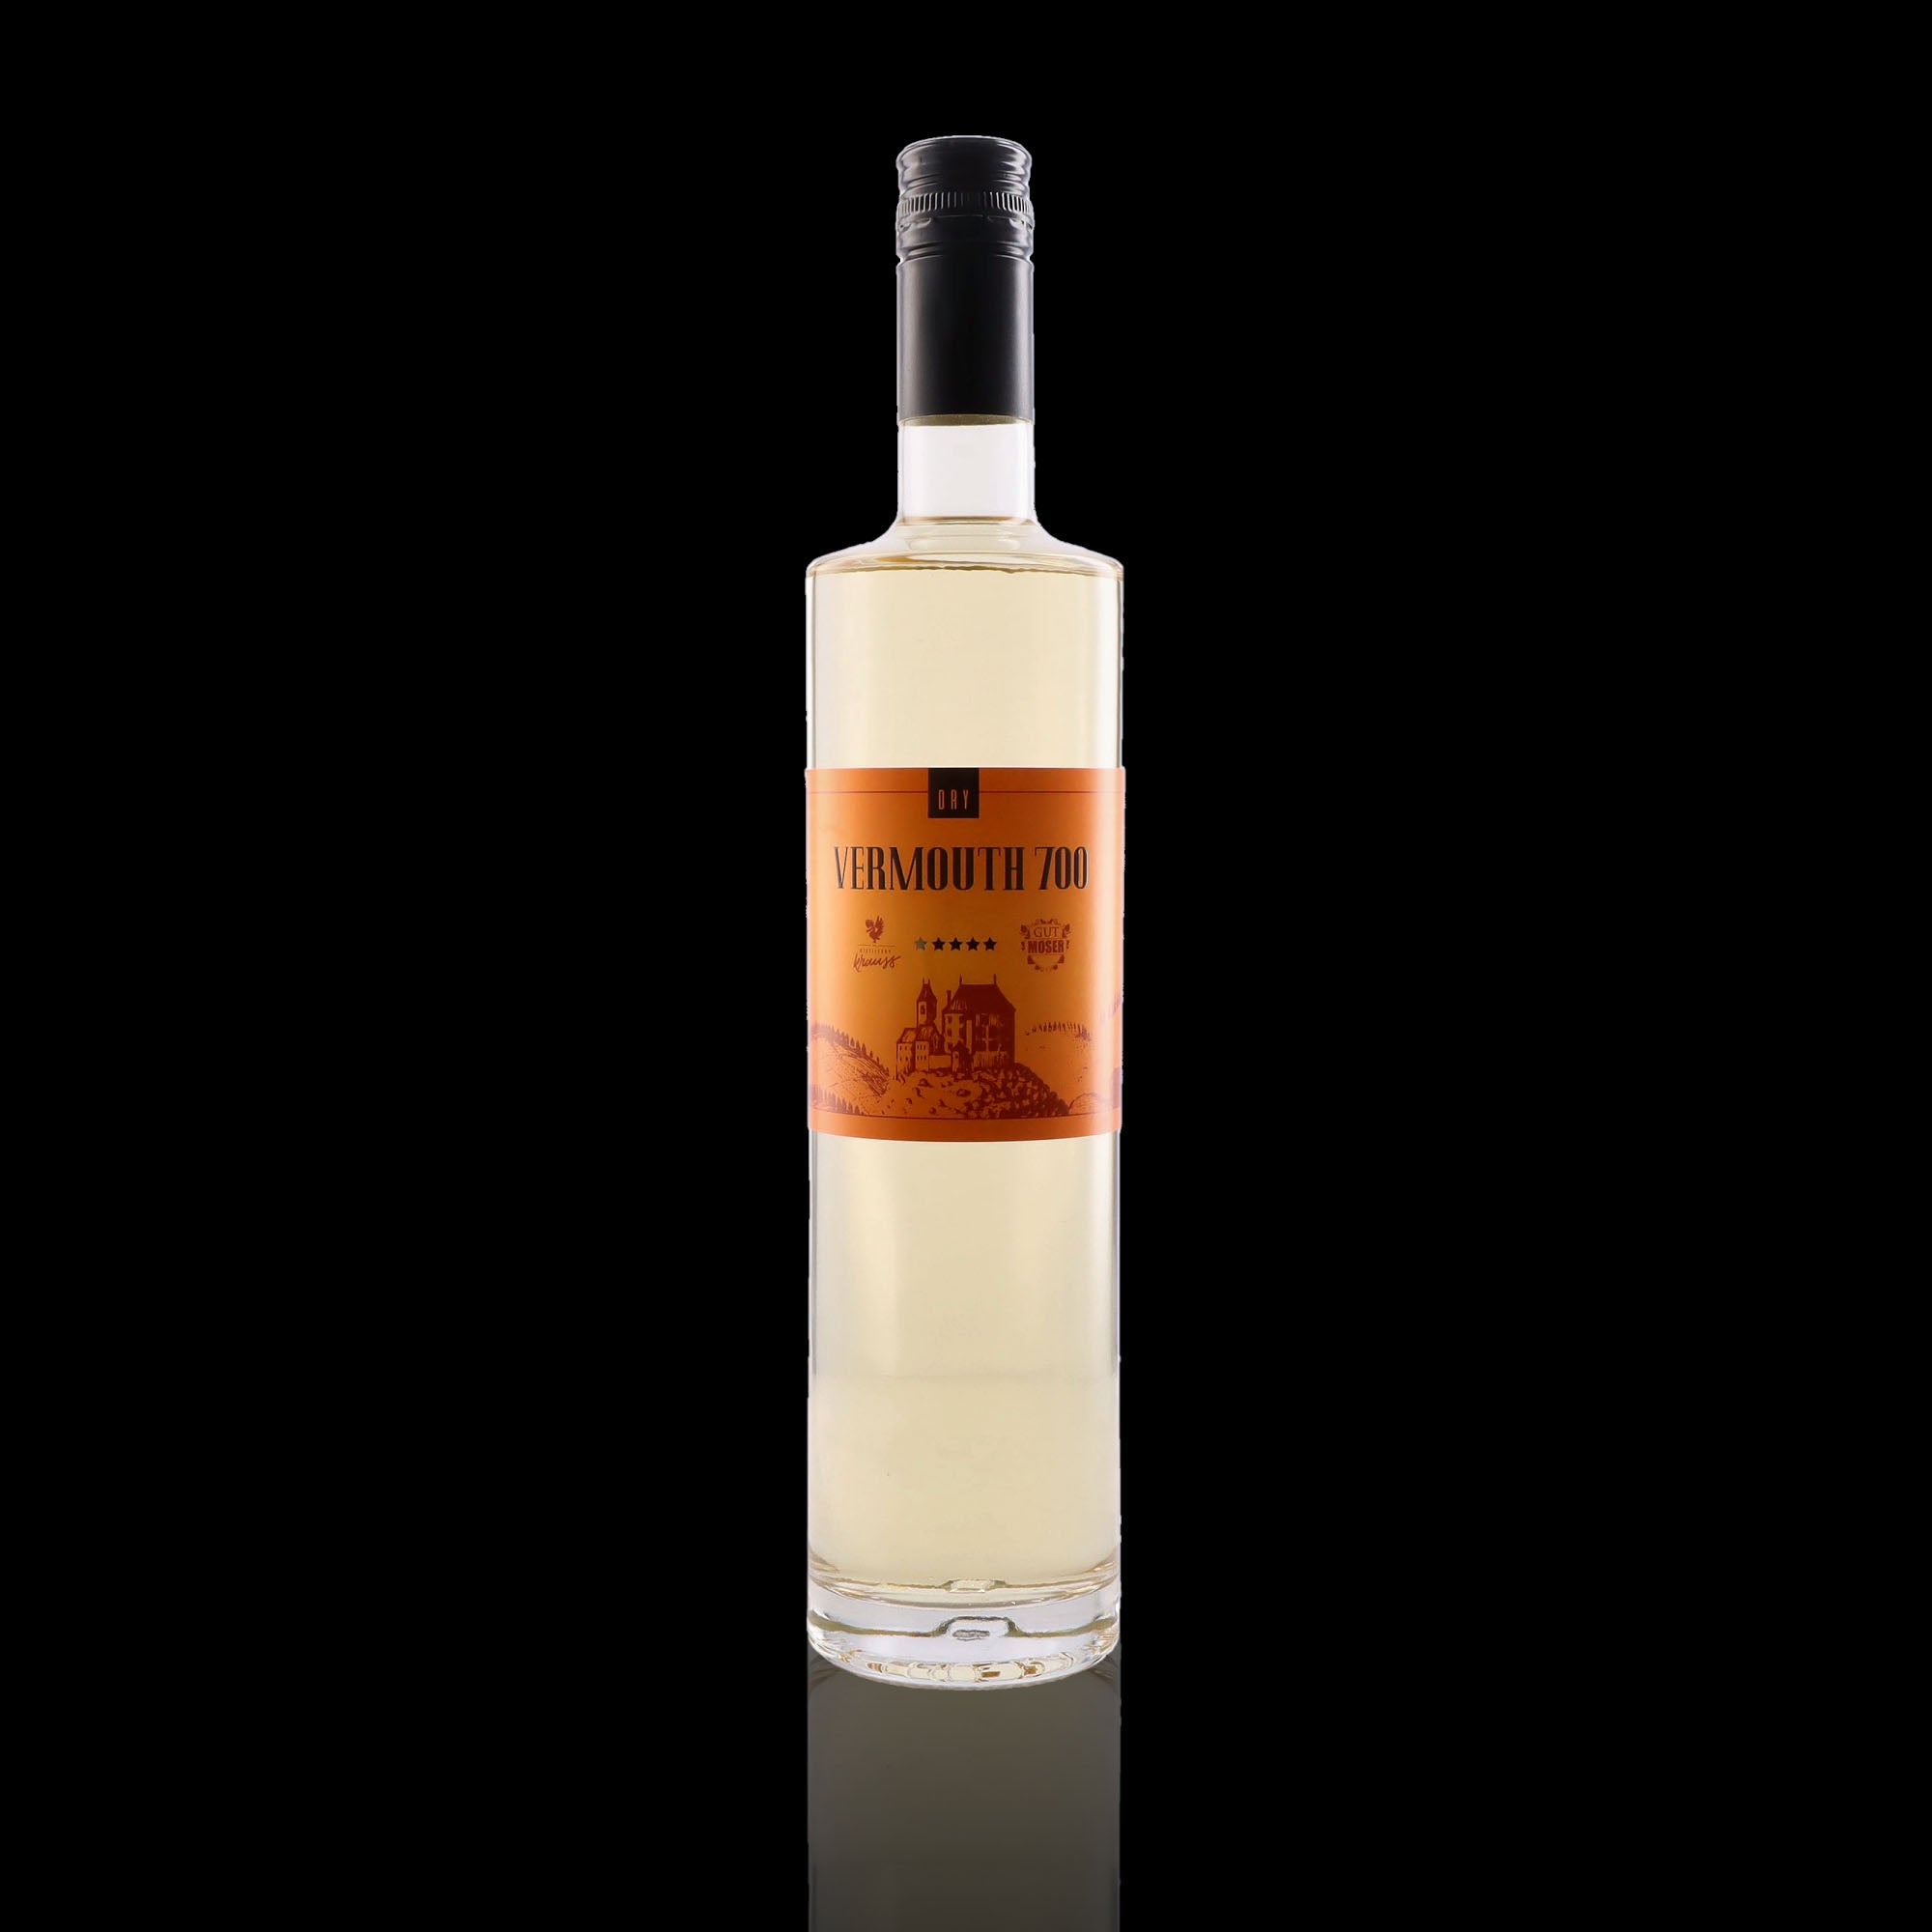 Une bouteille de vermouth, de la marque Distillery Krauss, nommée 700 Dry.